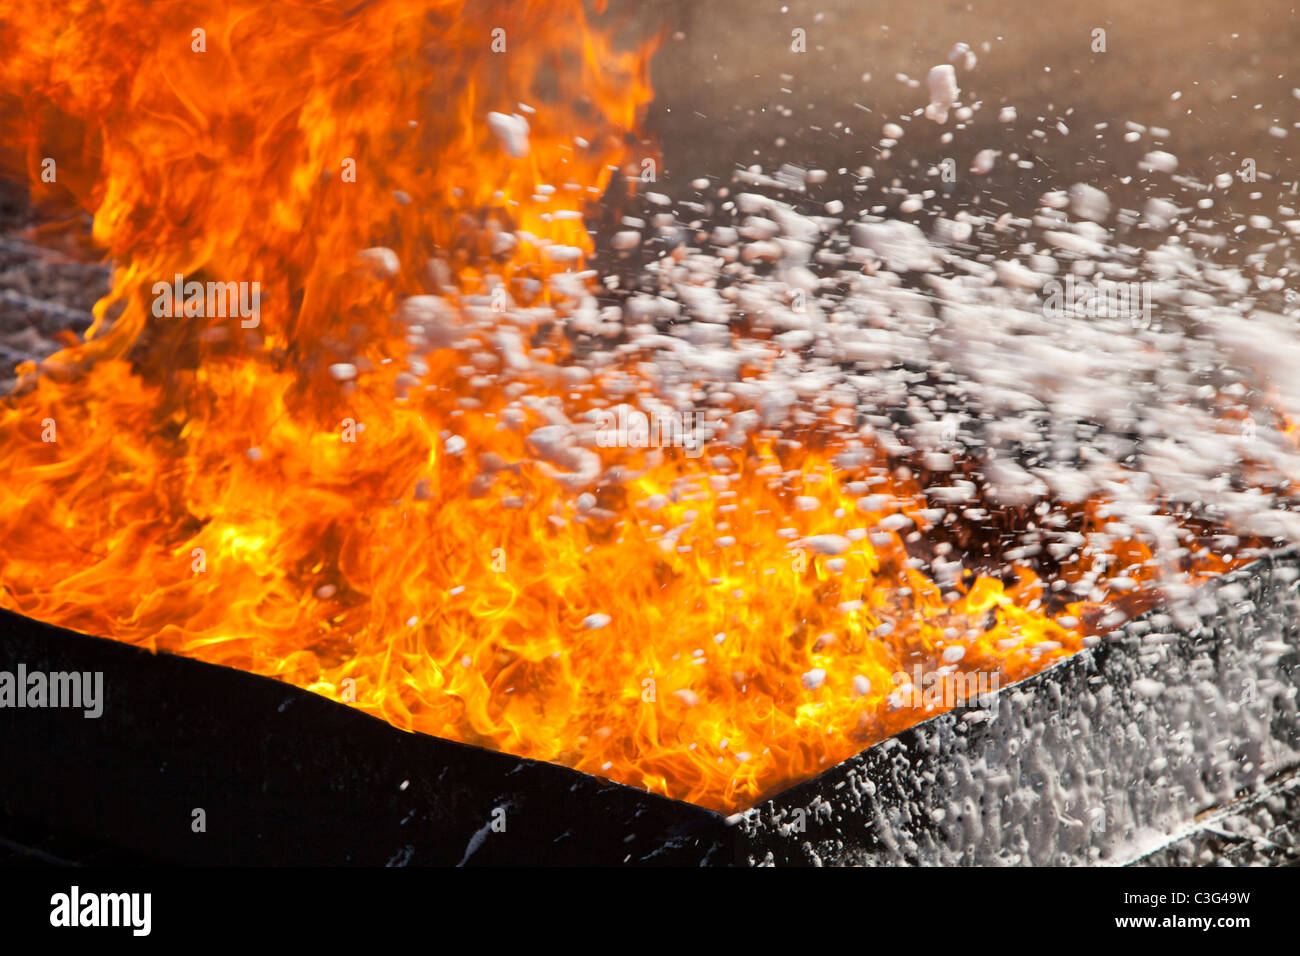 Ein Löschangriff mit einem Schaum-Feuerlöscher Stockfotografie - Alamy